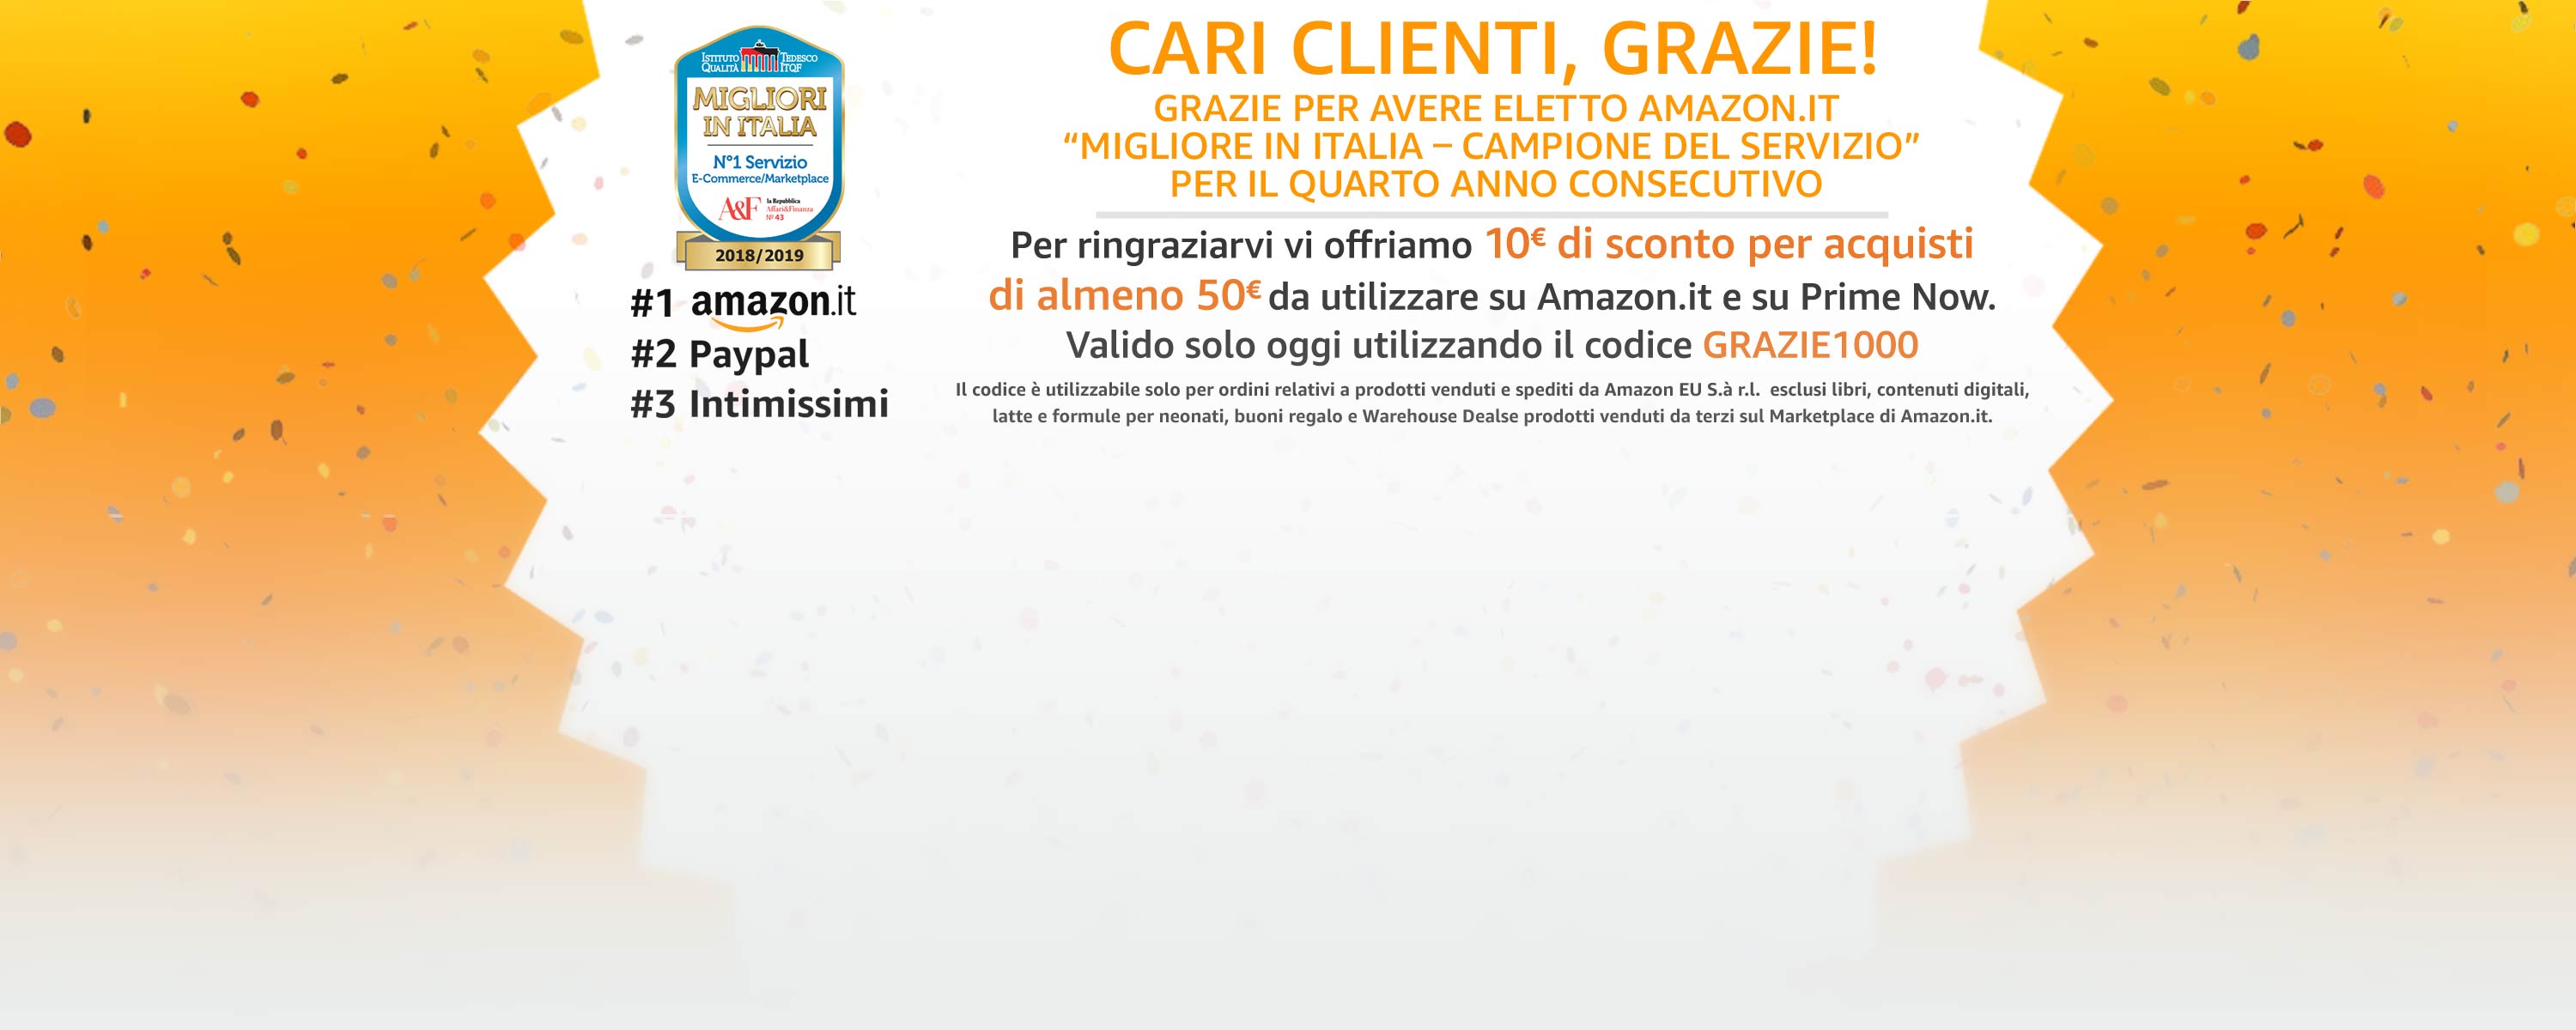 Amazon ha il miglior servizio clienti in Italia, come avere 10 euro di sconto immediato 1